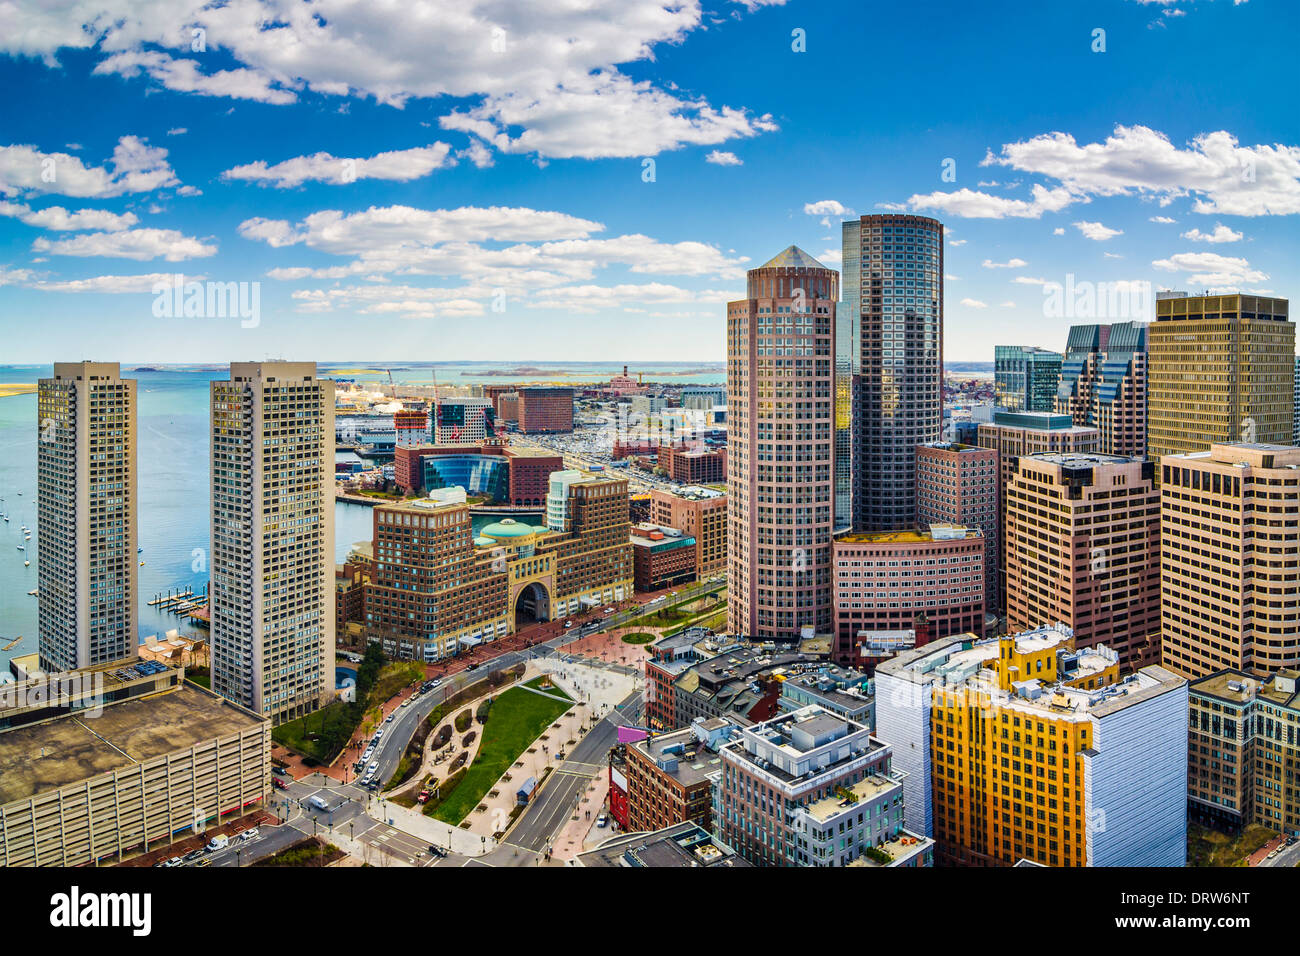 Boston, Massachusetts aerial view and skyline Stock Photo